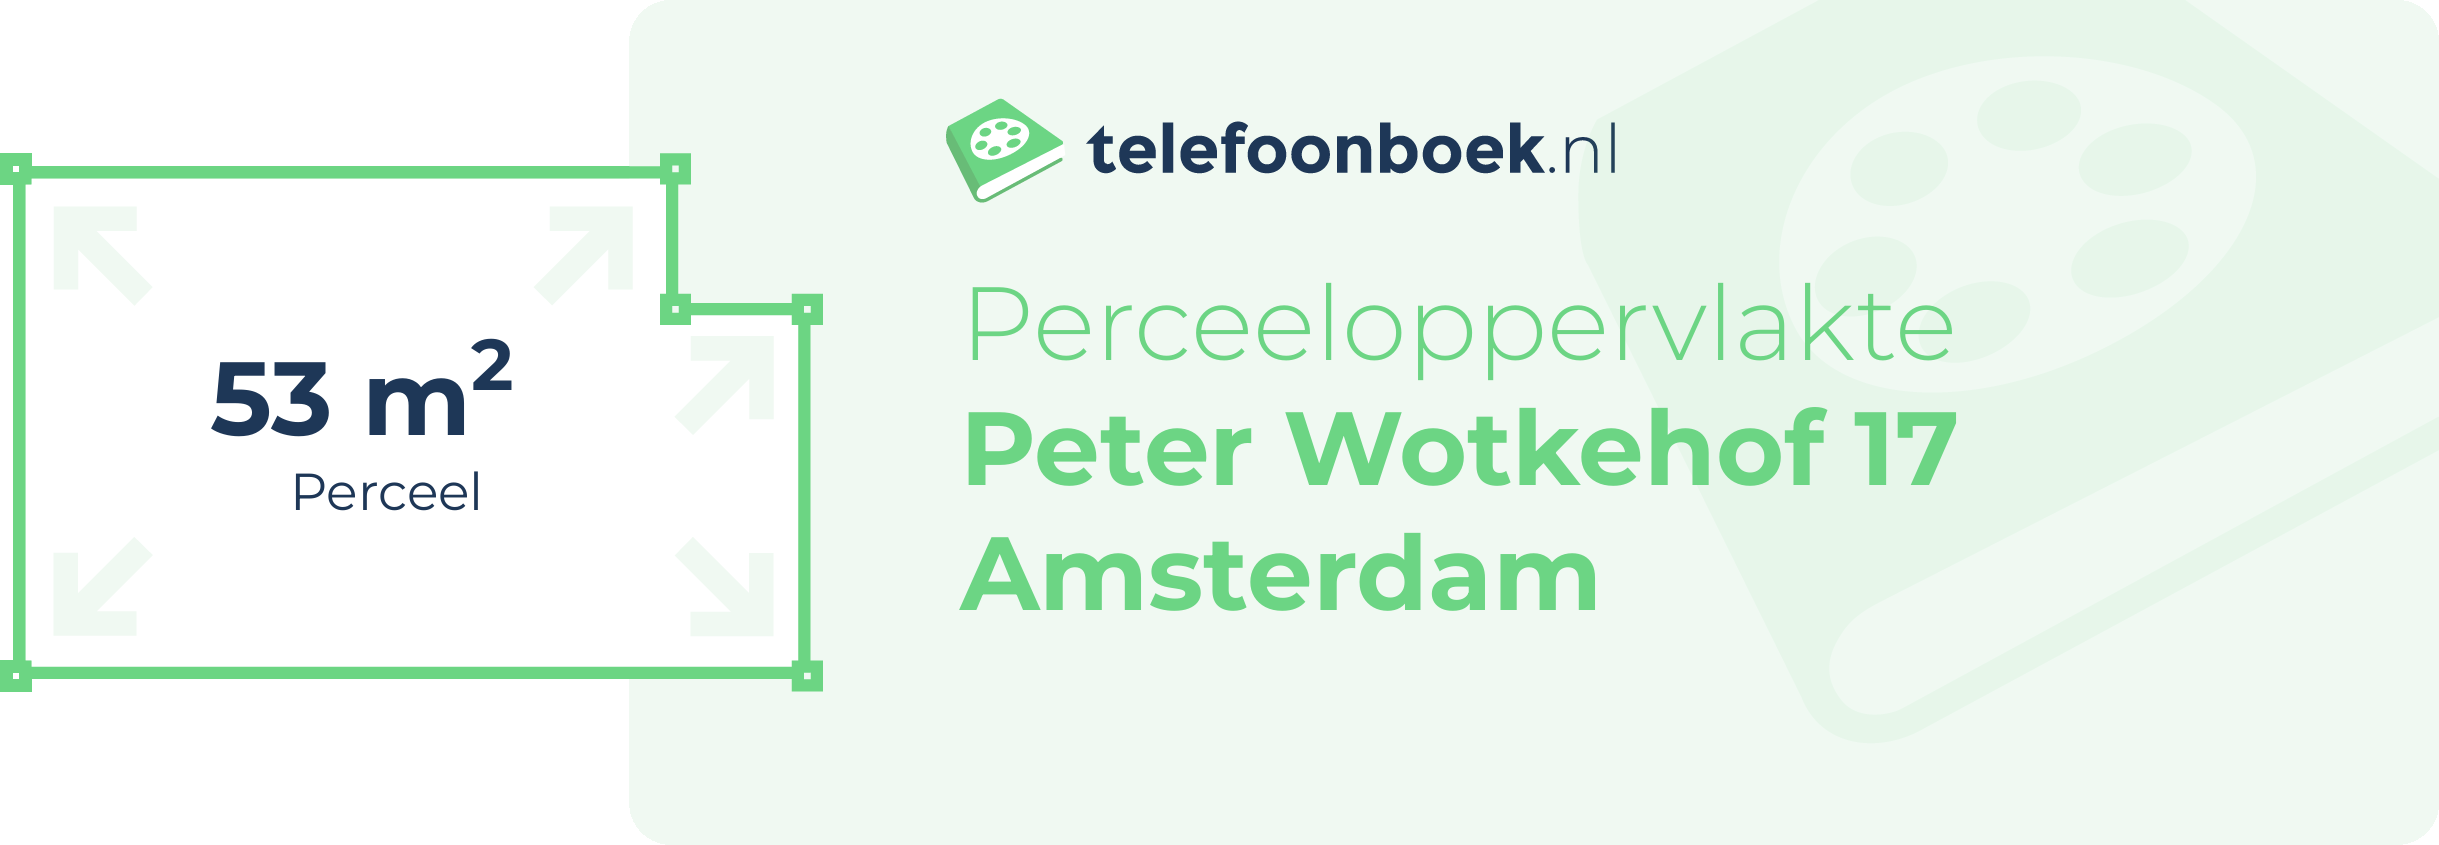 Perceeloppervlakte Peter Wotkehof 17 Amsterdam